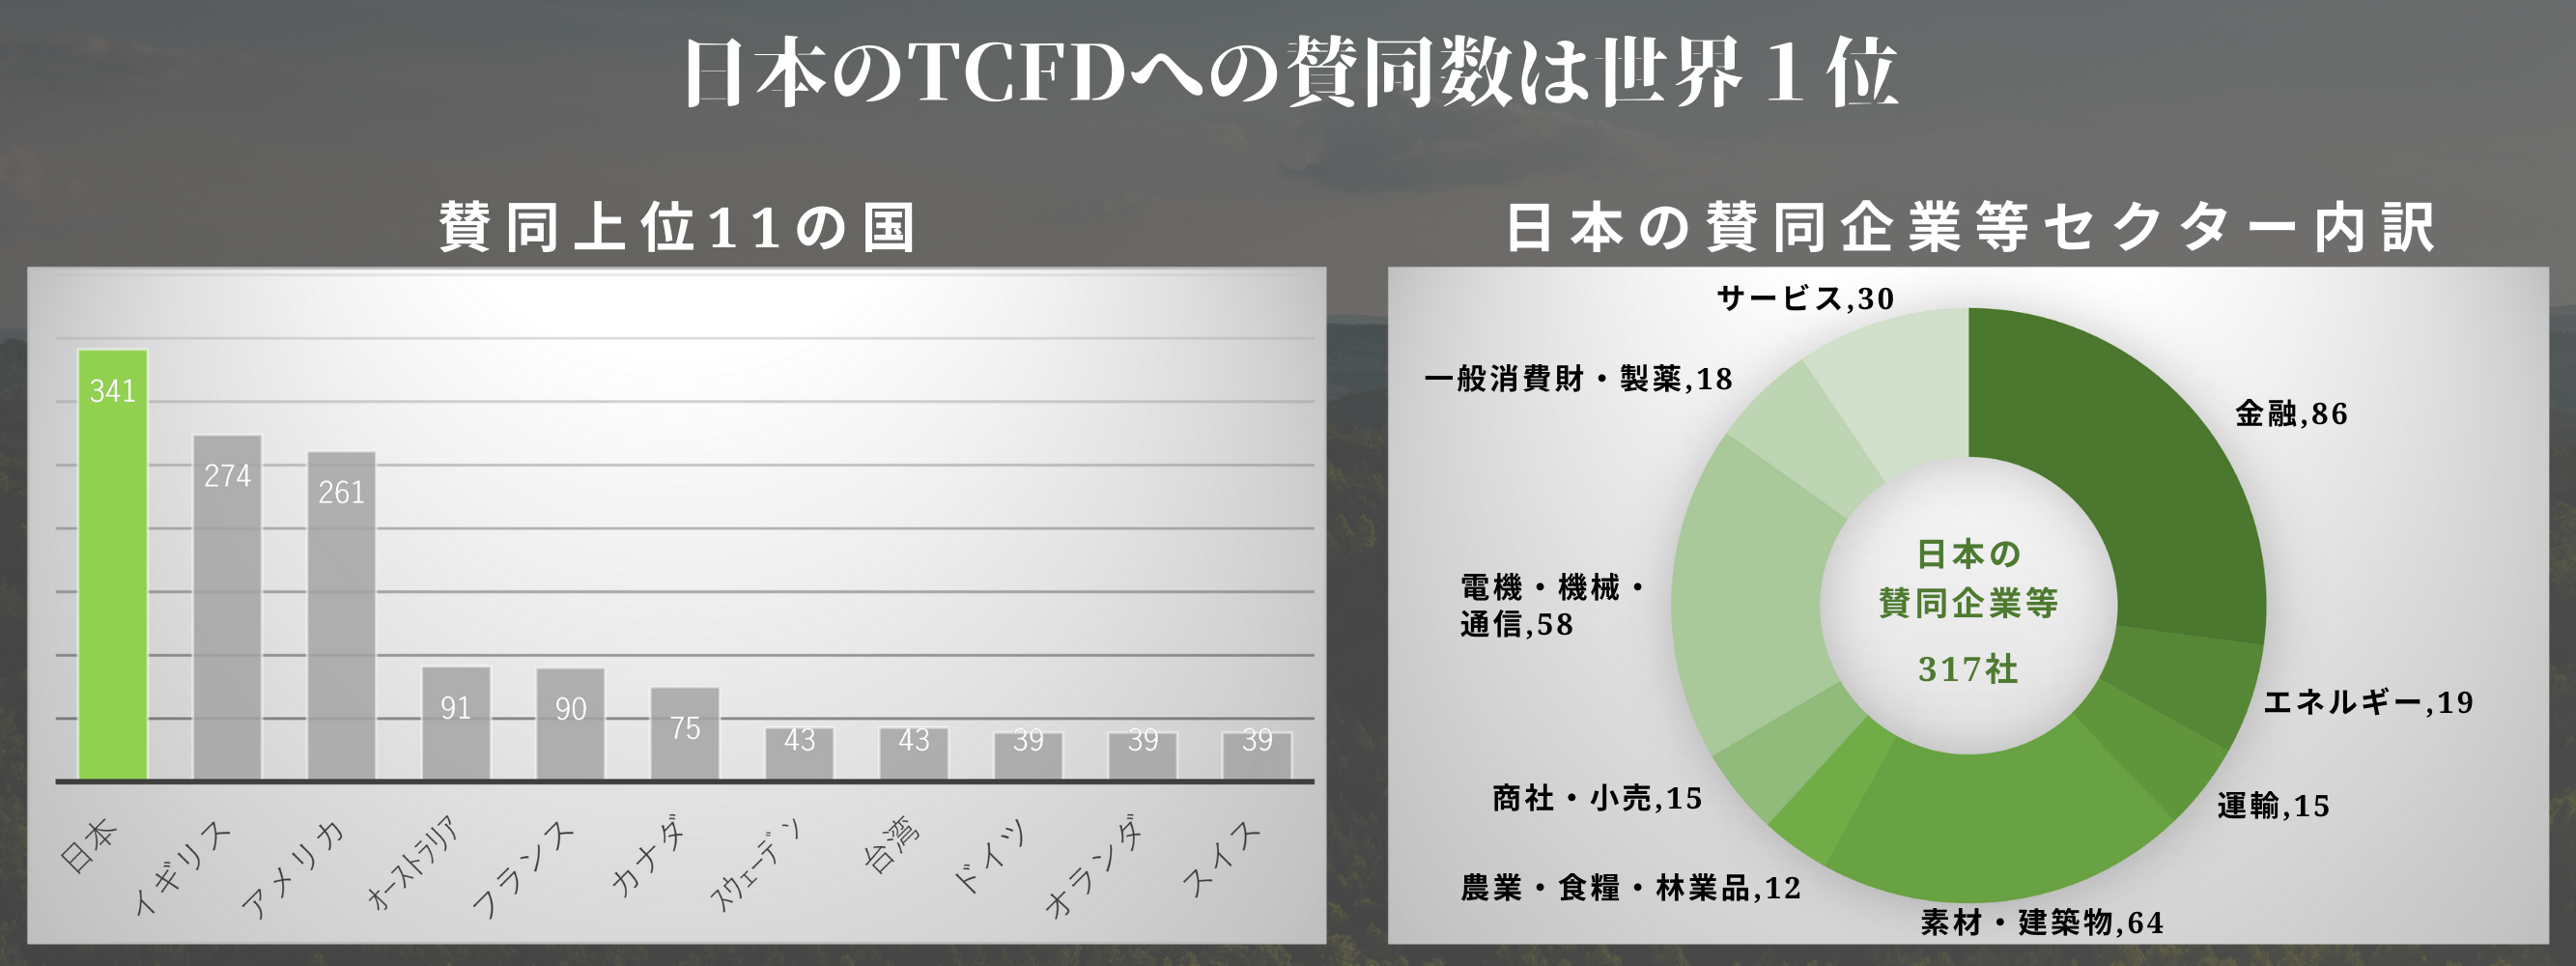 世界各国のTCFD賛同数と、日本のセクター内訳